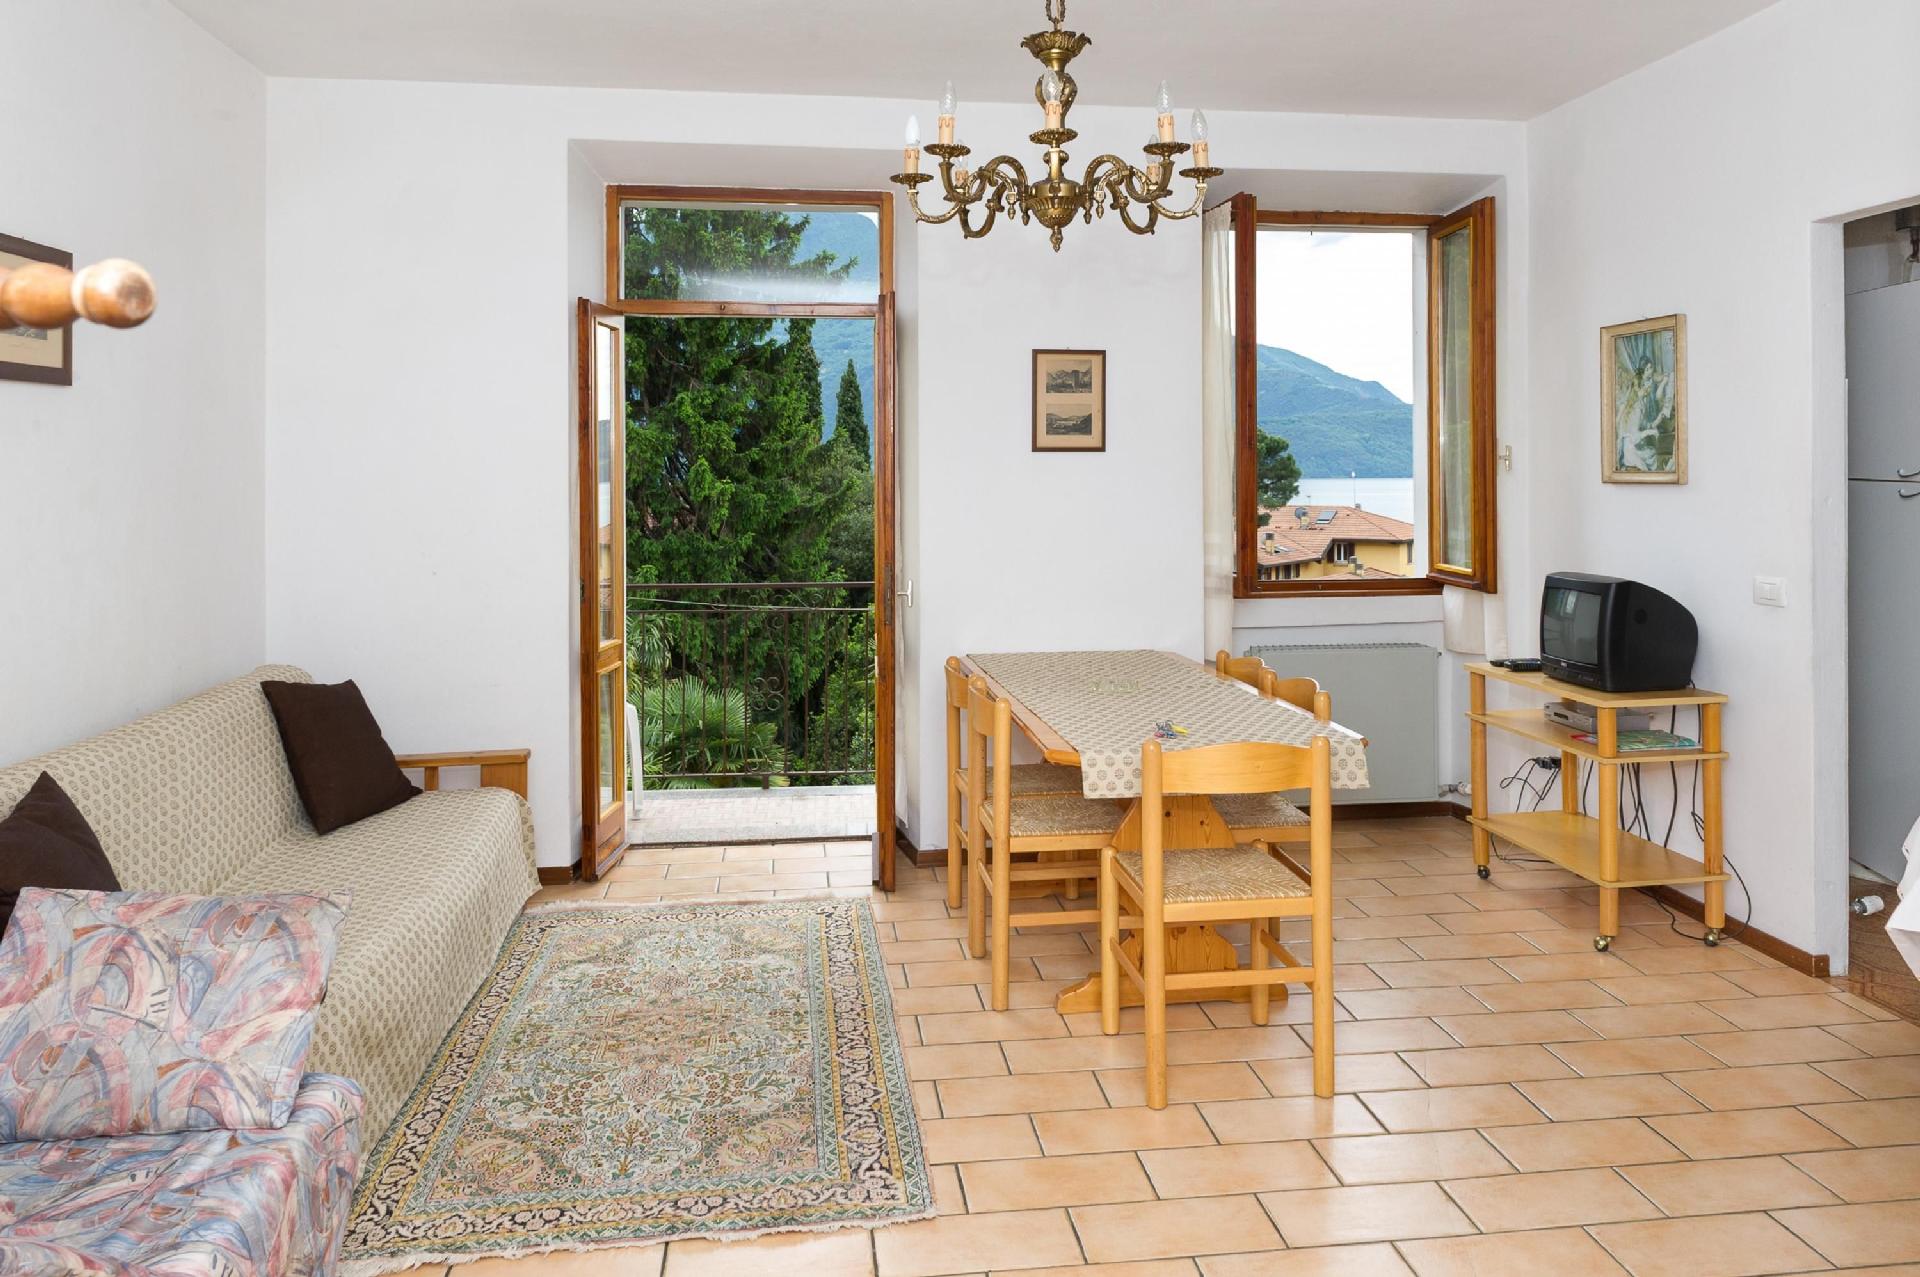 Appartement in Domaso mit Garten und Grill Ferienwohnung in Italien